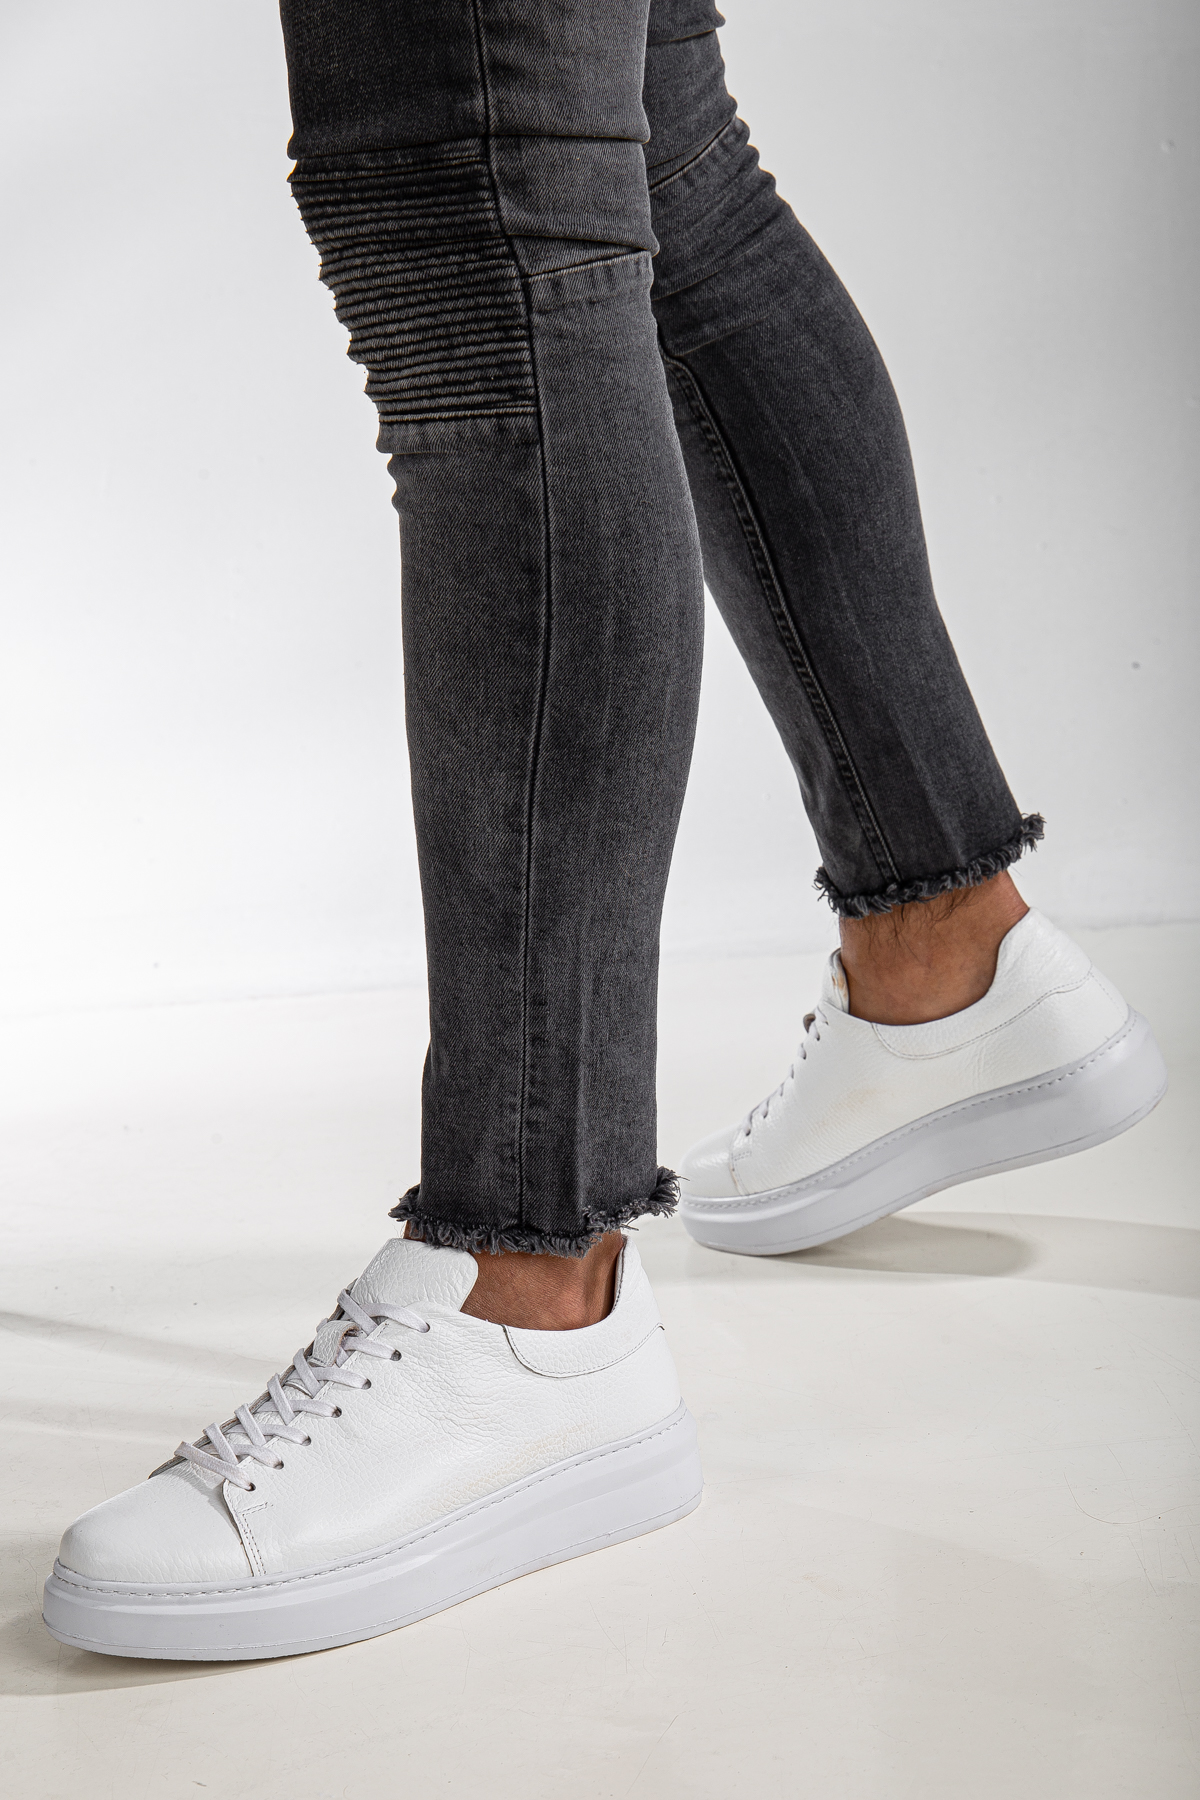 Erkek Hakiki İçi Dışı Deri Premium Sneakers Spor Ayakkabı Beyaz